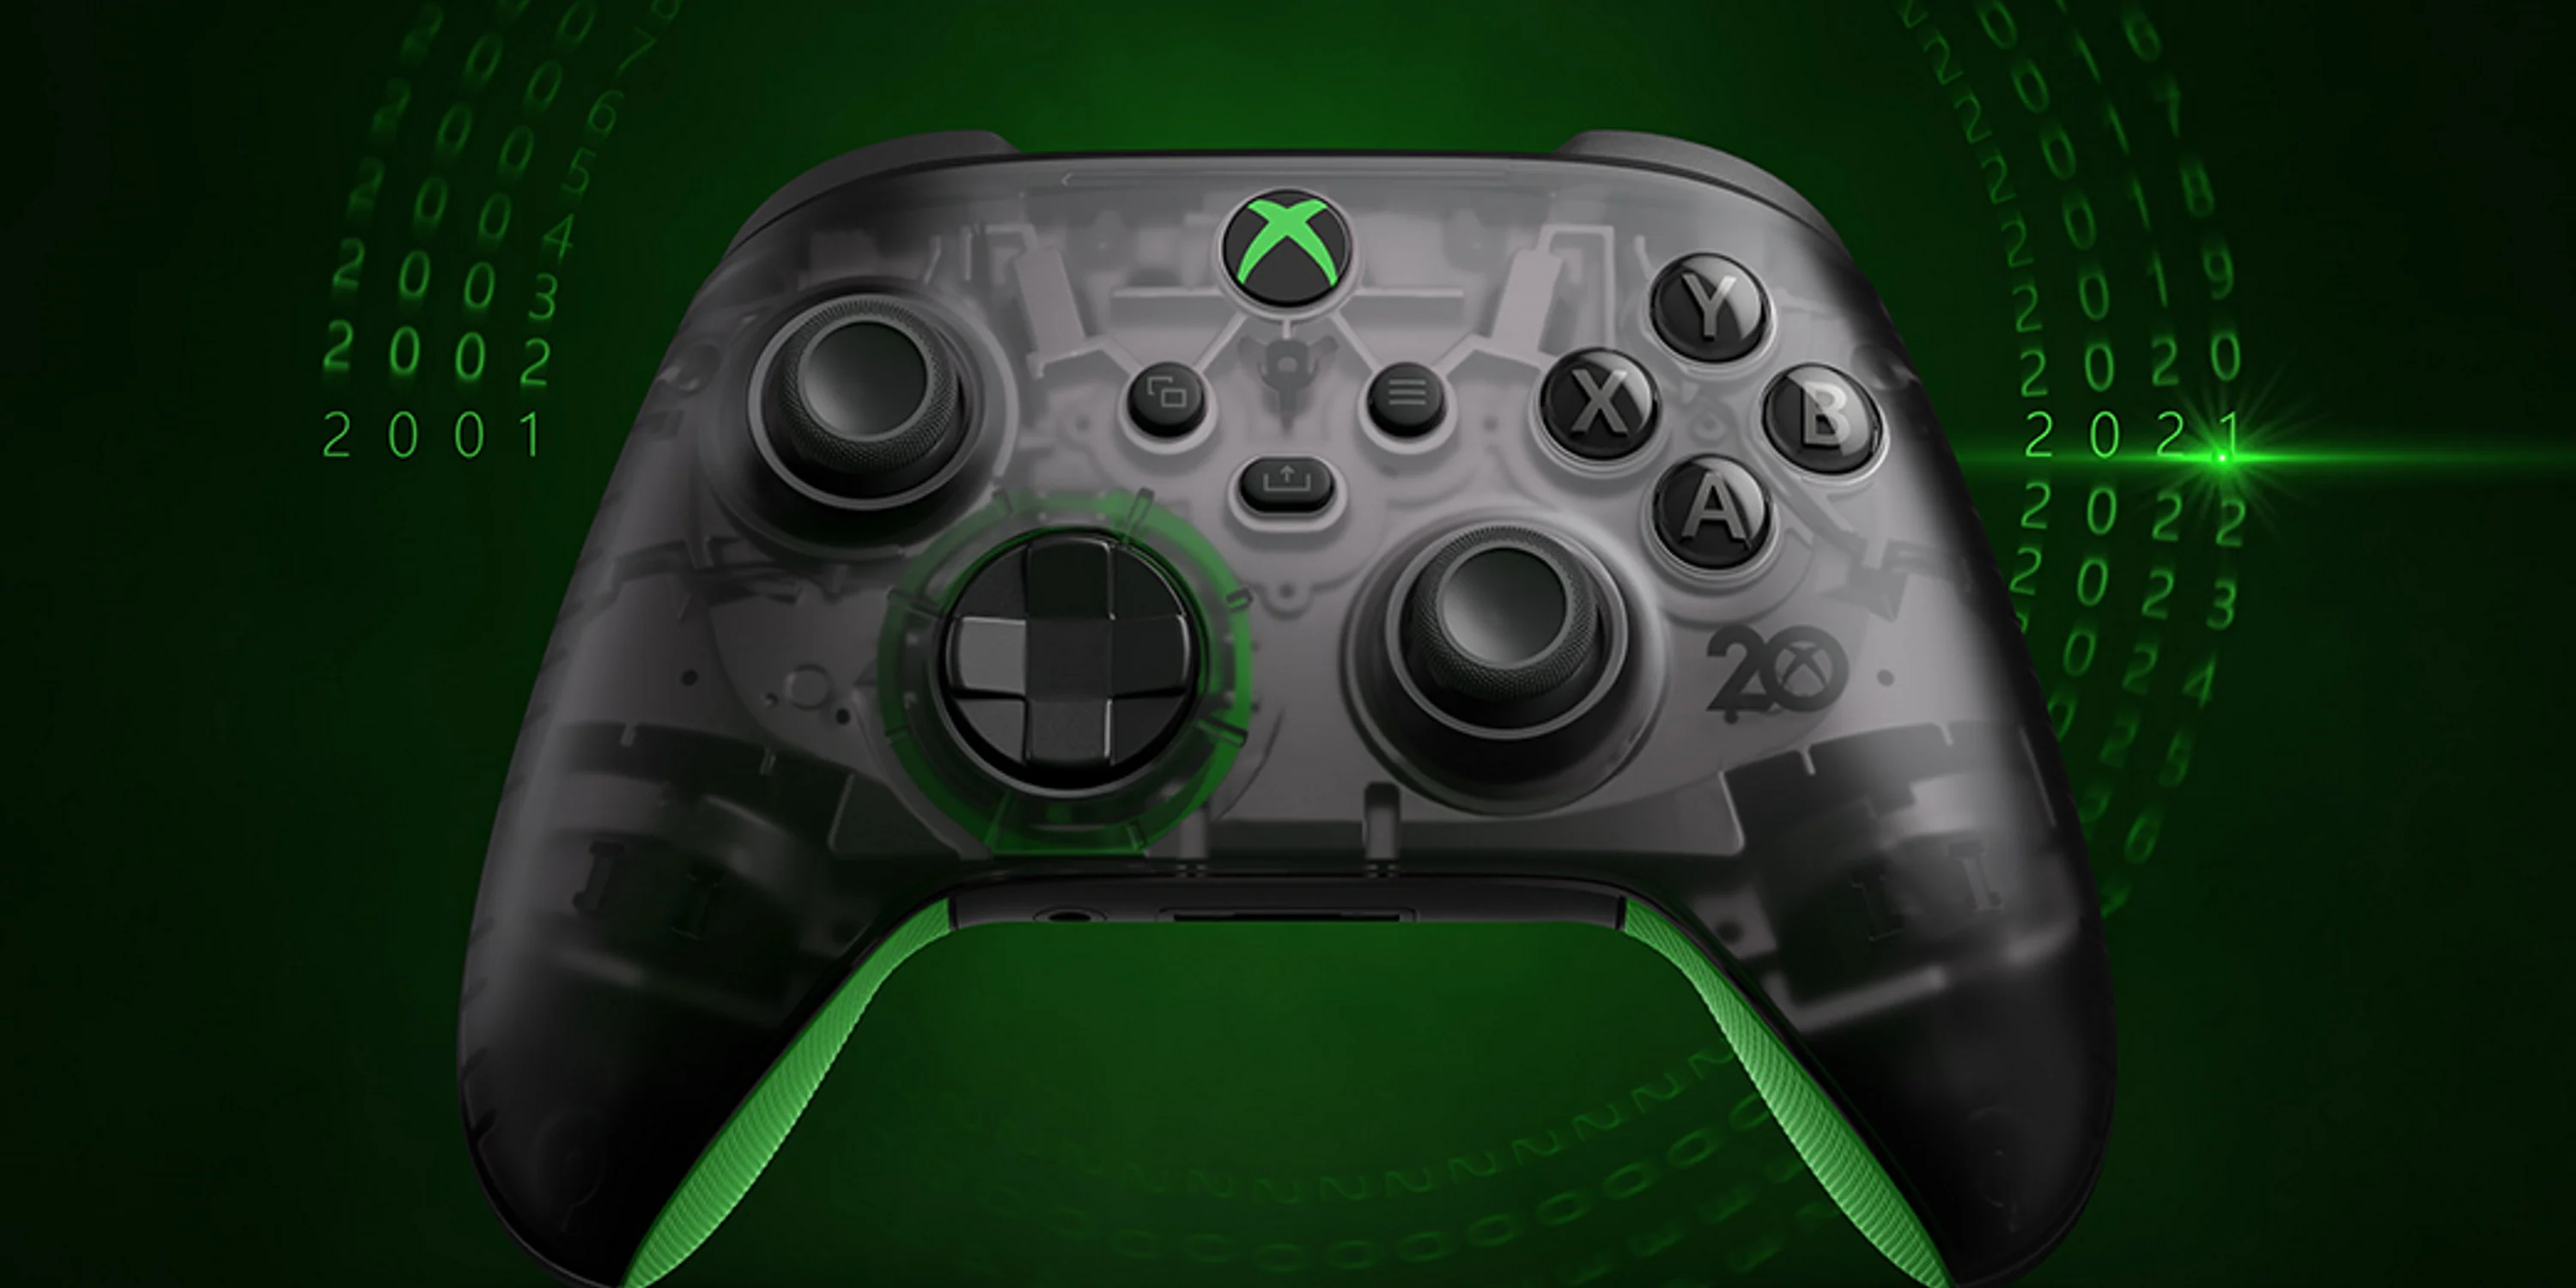 Gamepad Xbox Wirelles Controller 4 20th Anniversary Special Edition je 100% kompatibilní s herními konzolemi Xbox One a Series S / X, PC systémy s Windows 10 i s vybranými smartphony na bázi Androidu či iOS